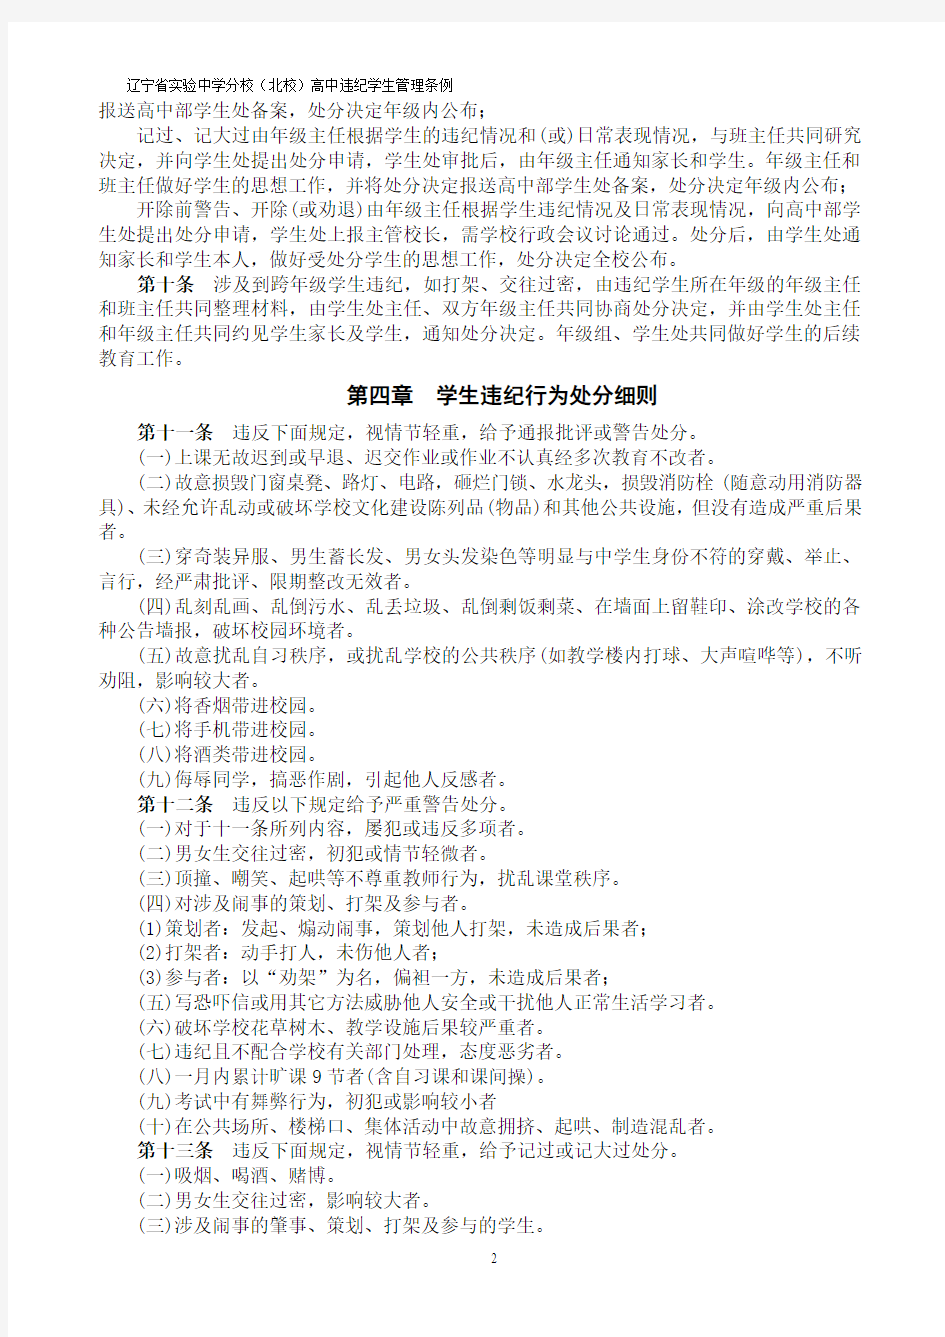 辽宁省实验中学分校(北校)高中学生违纪管理条例